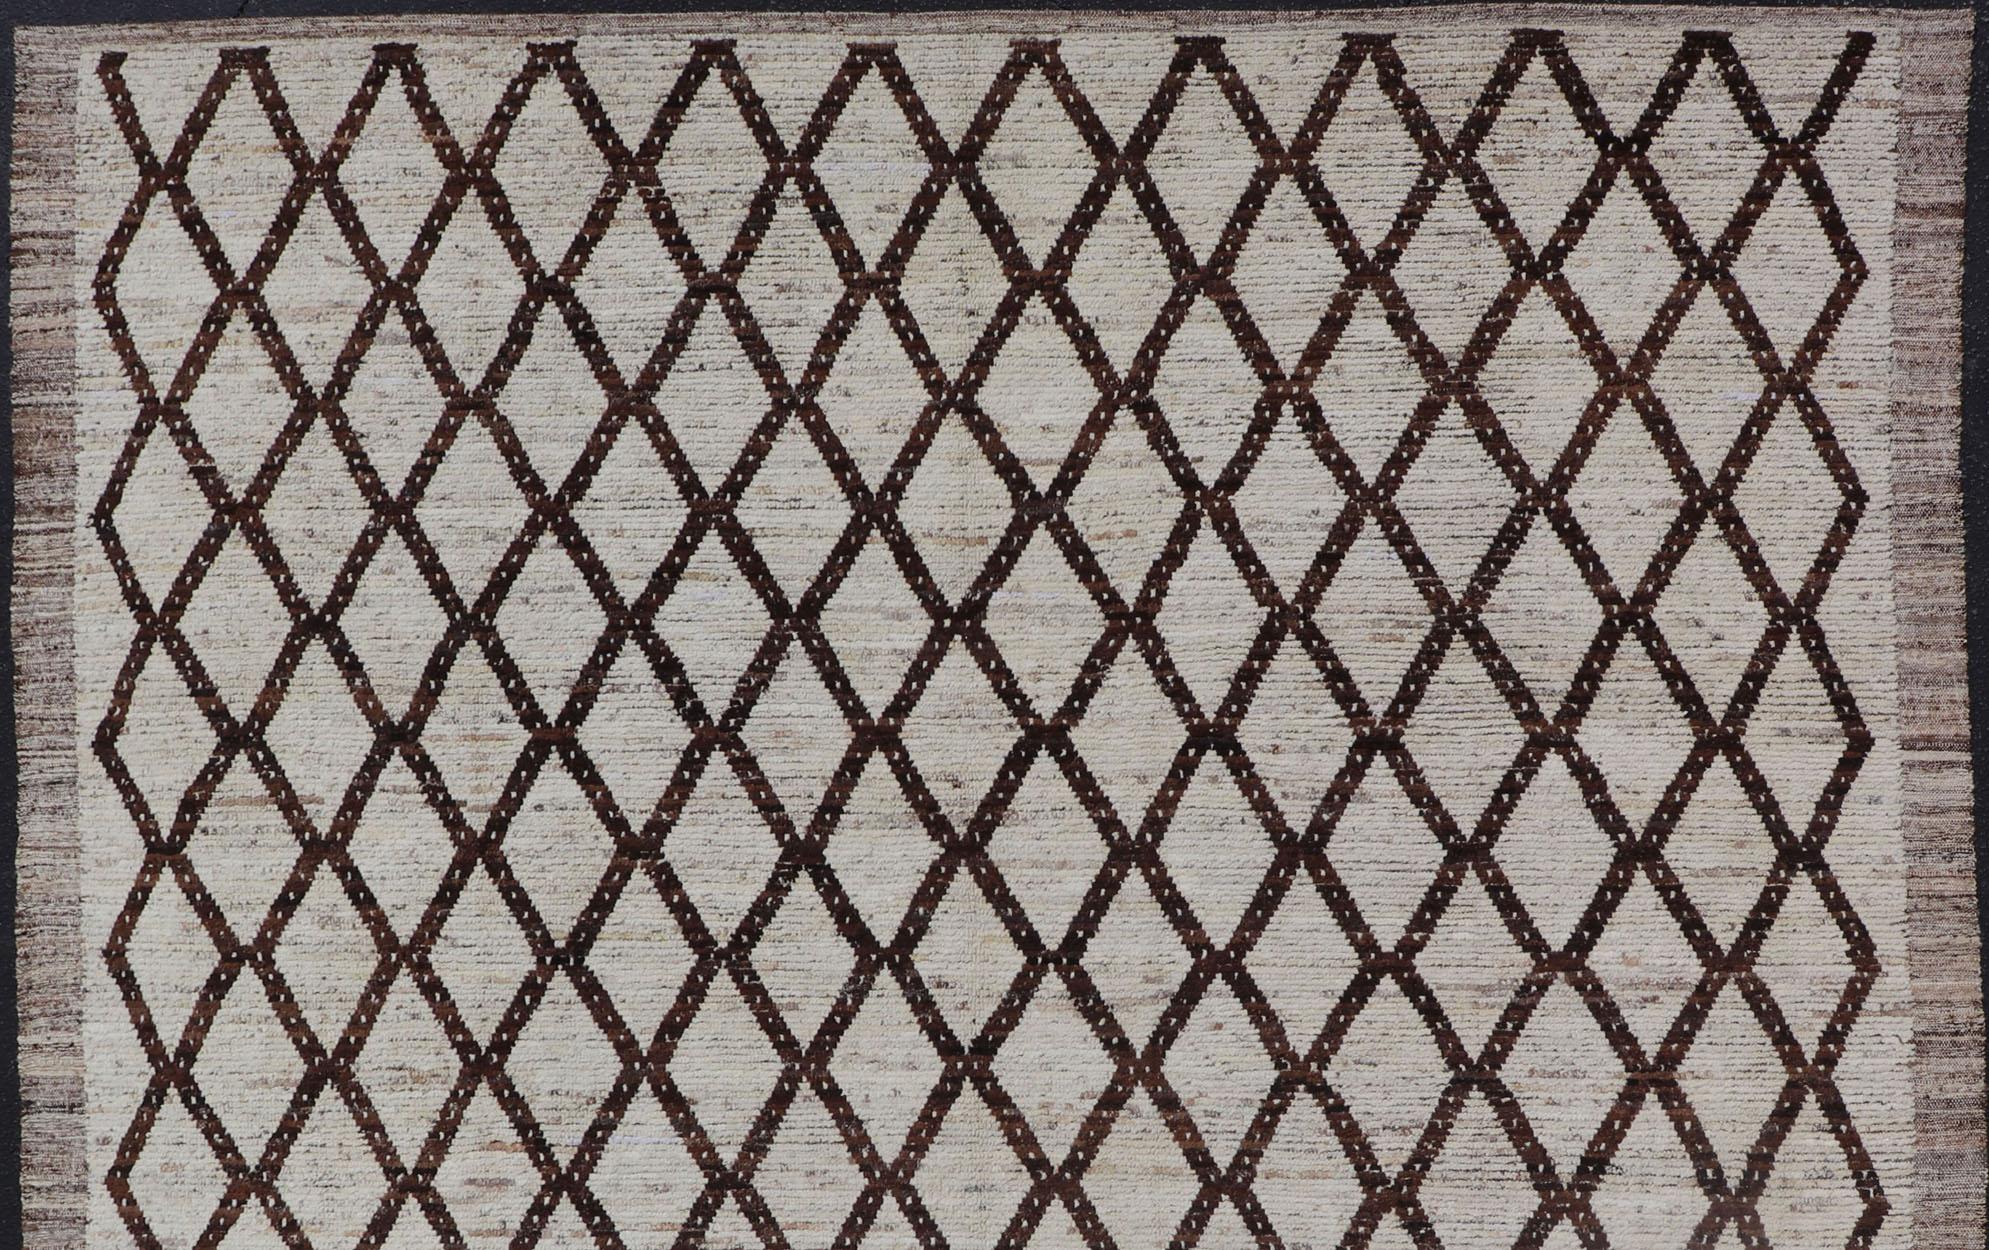 Cremefarbener und brauner Teppich mit modernem, lässigem Design und natürlicher Wolle.  Keivan Woven Arts / Teppich AFG-31889, Herkunftsland / Art: Afghanistan / Modern,
Maße: 9'2 x 11'4.
Das klassische marokkanische Design dieses modernen, lässigen